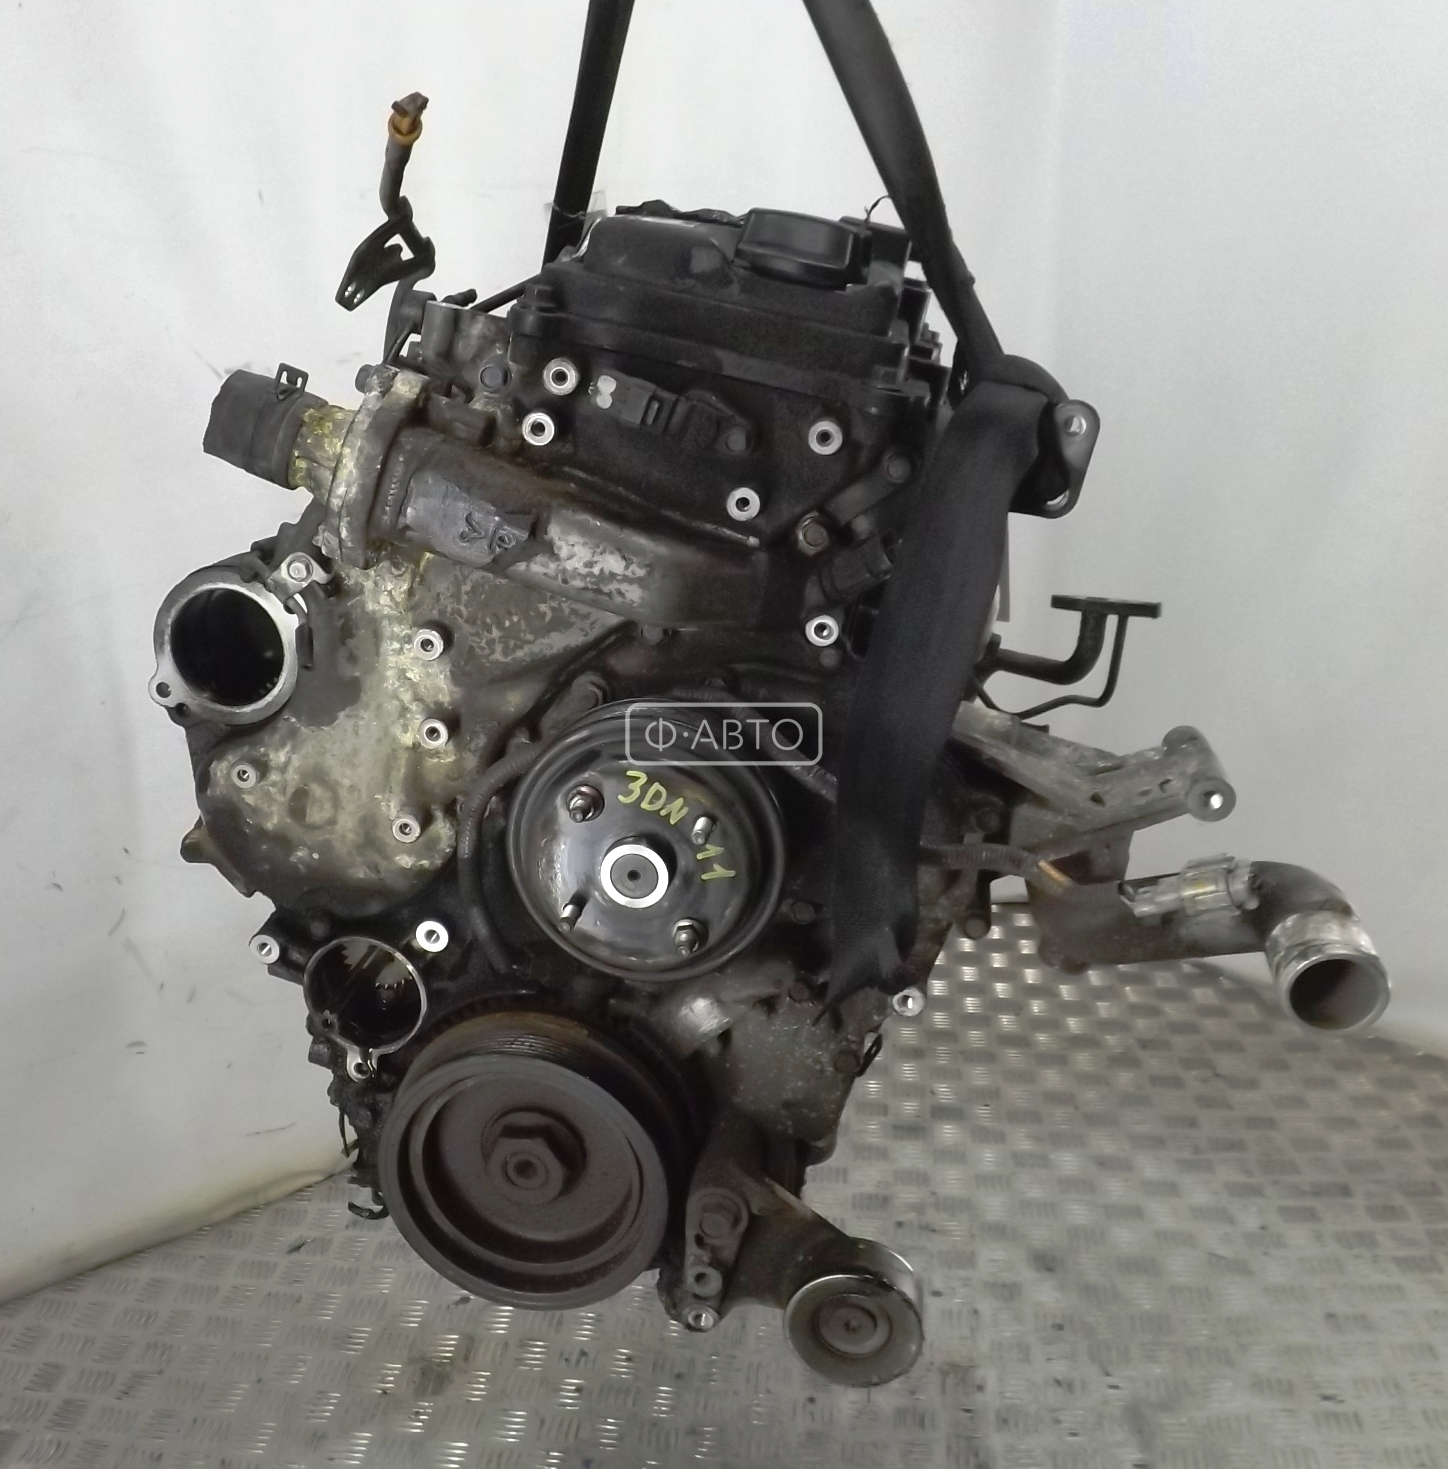 Технические характеристики мотора Nissan TD42 4.2 литра